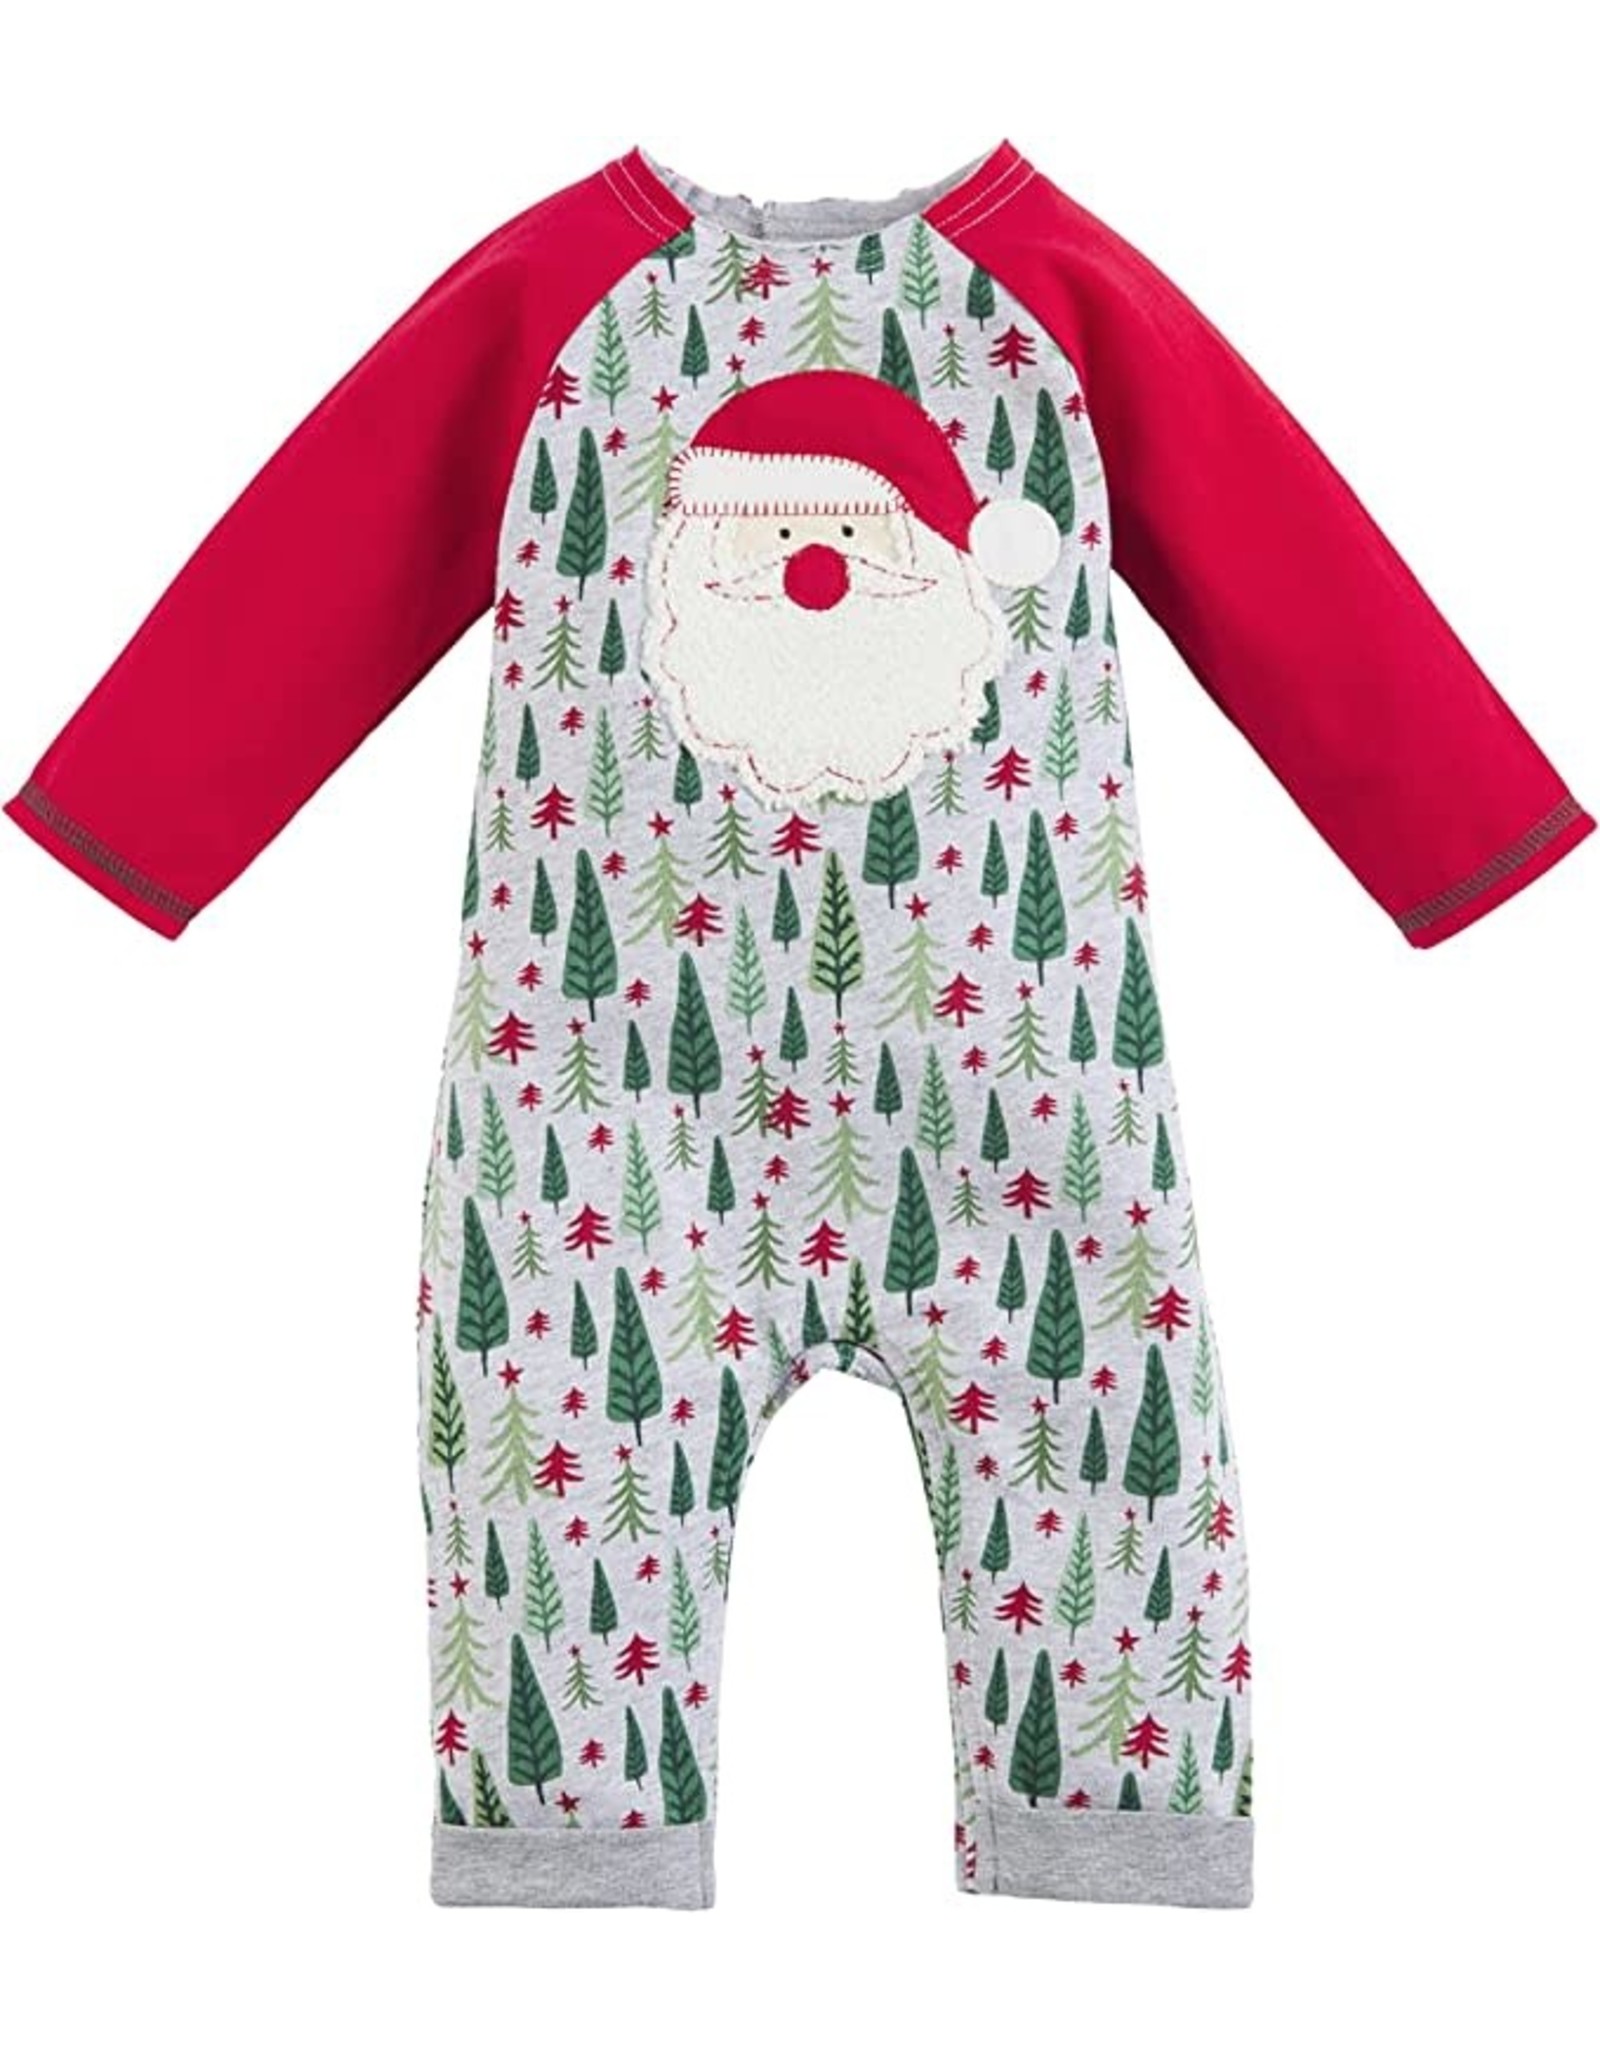 Mud Pie Christmas Sleepwear Family Pajamas Baby 1pc Infant 9-12 Months